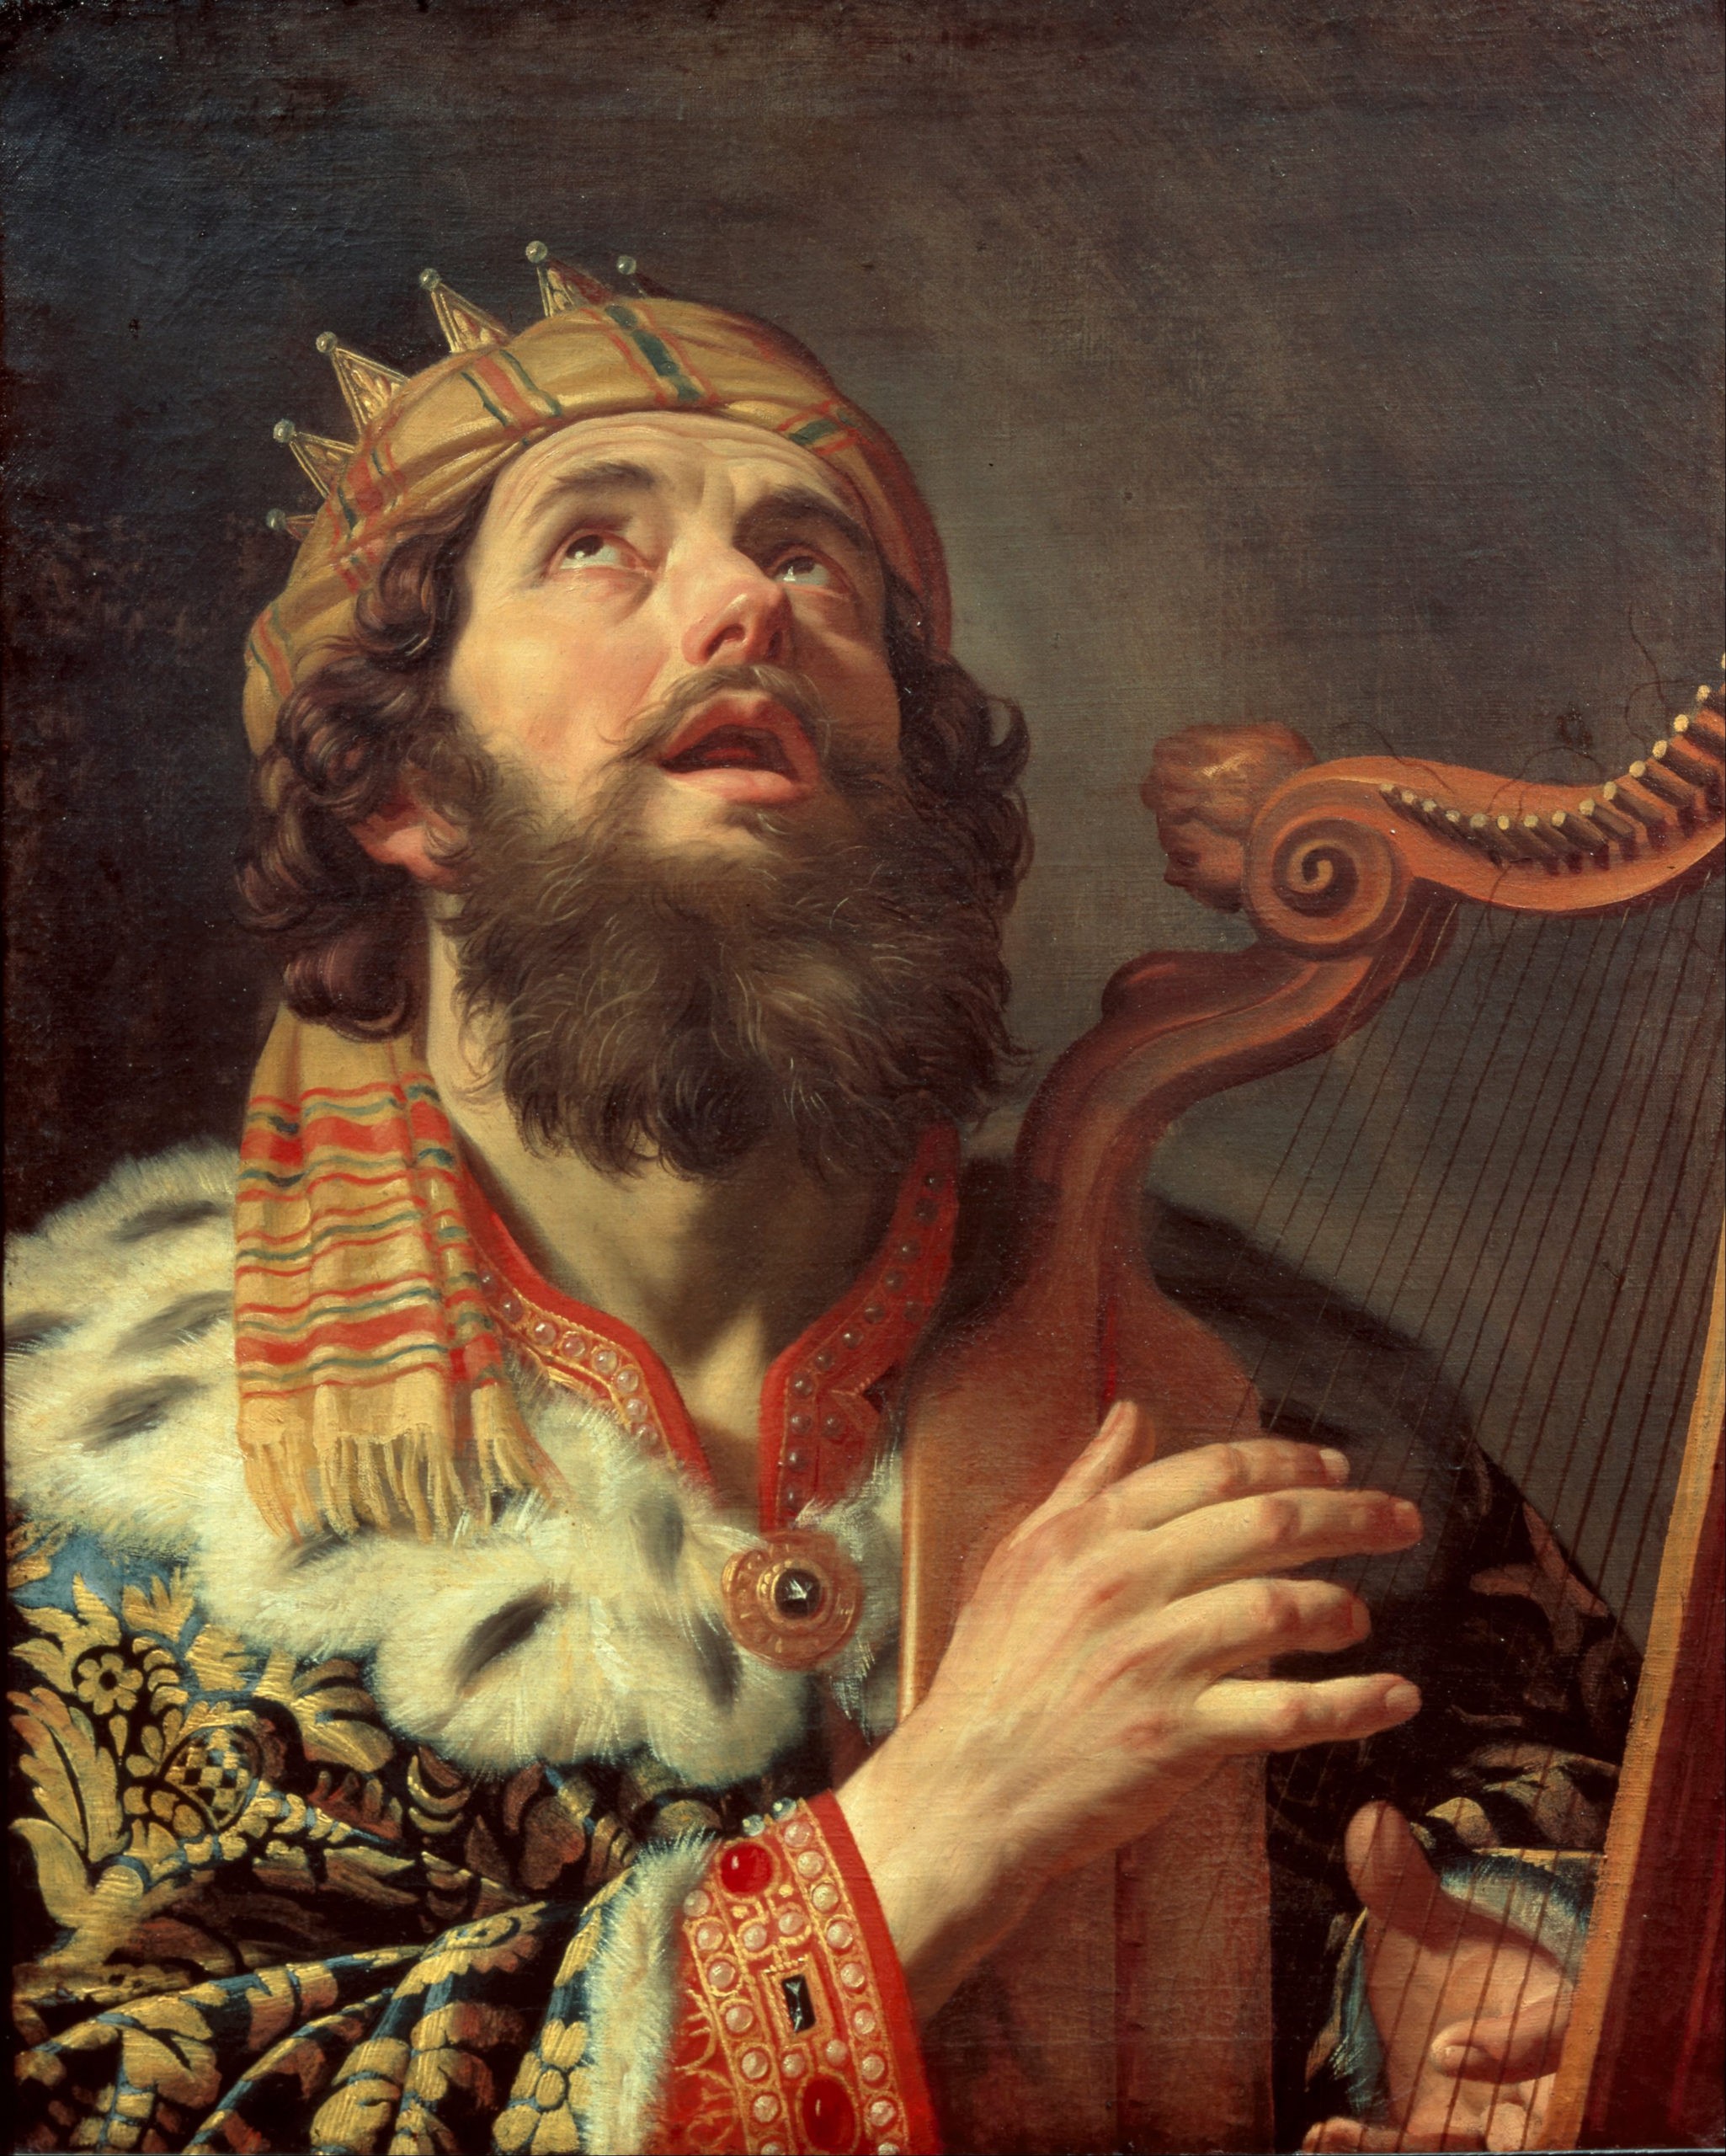 Was King David Illegitimate? (2 of 4)